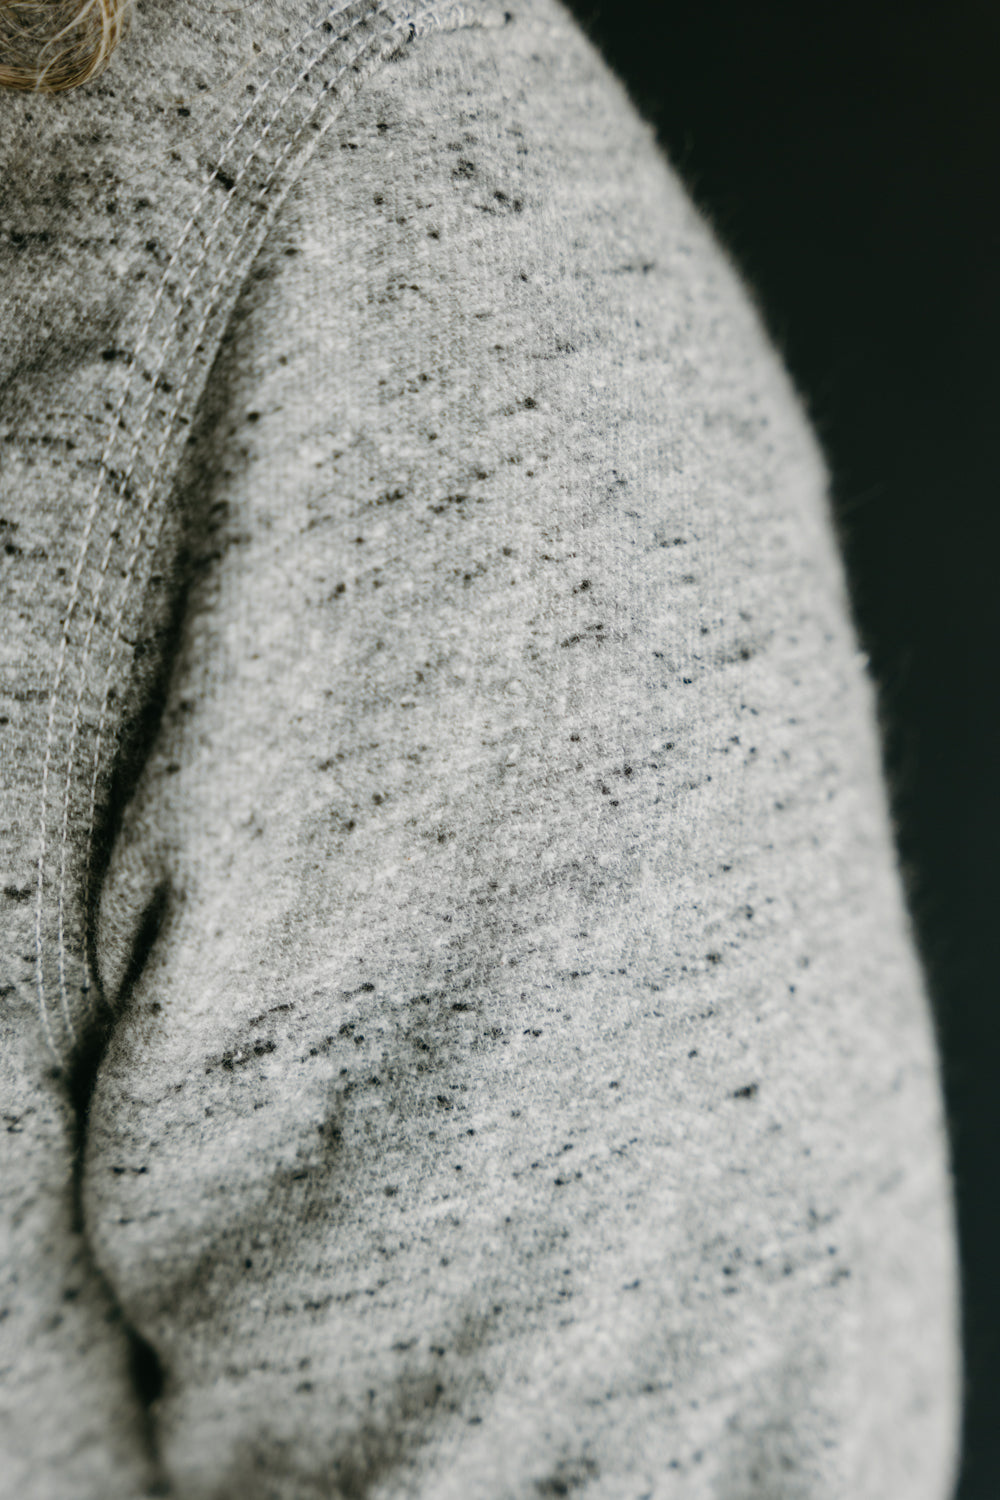 BM Shirt - Grey Oatmeal Flannel